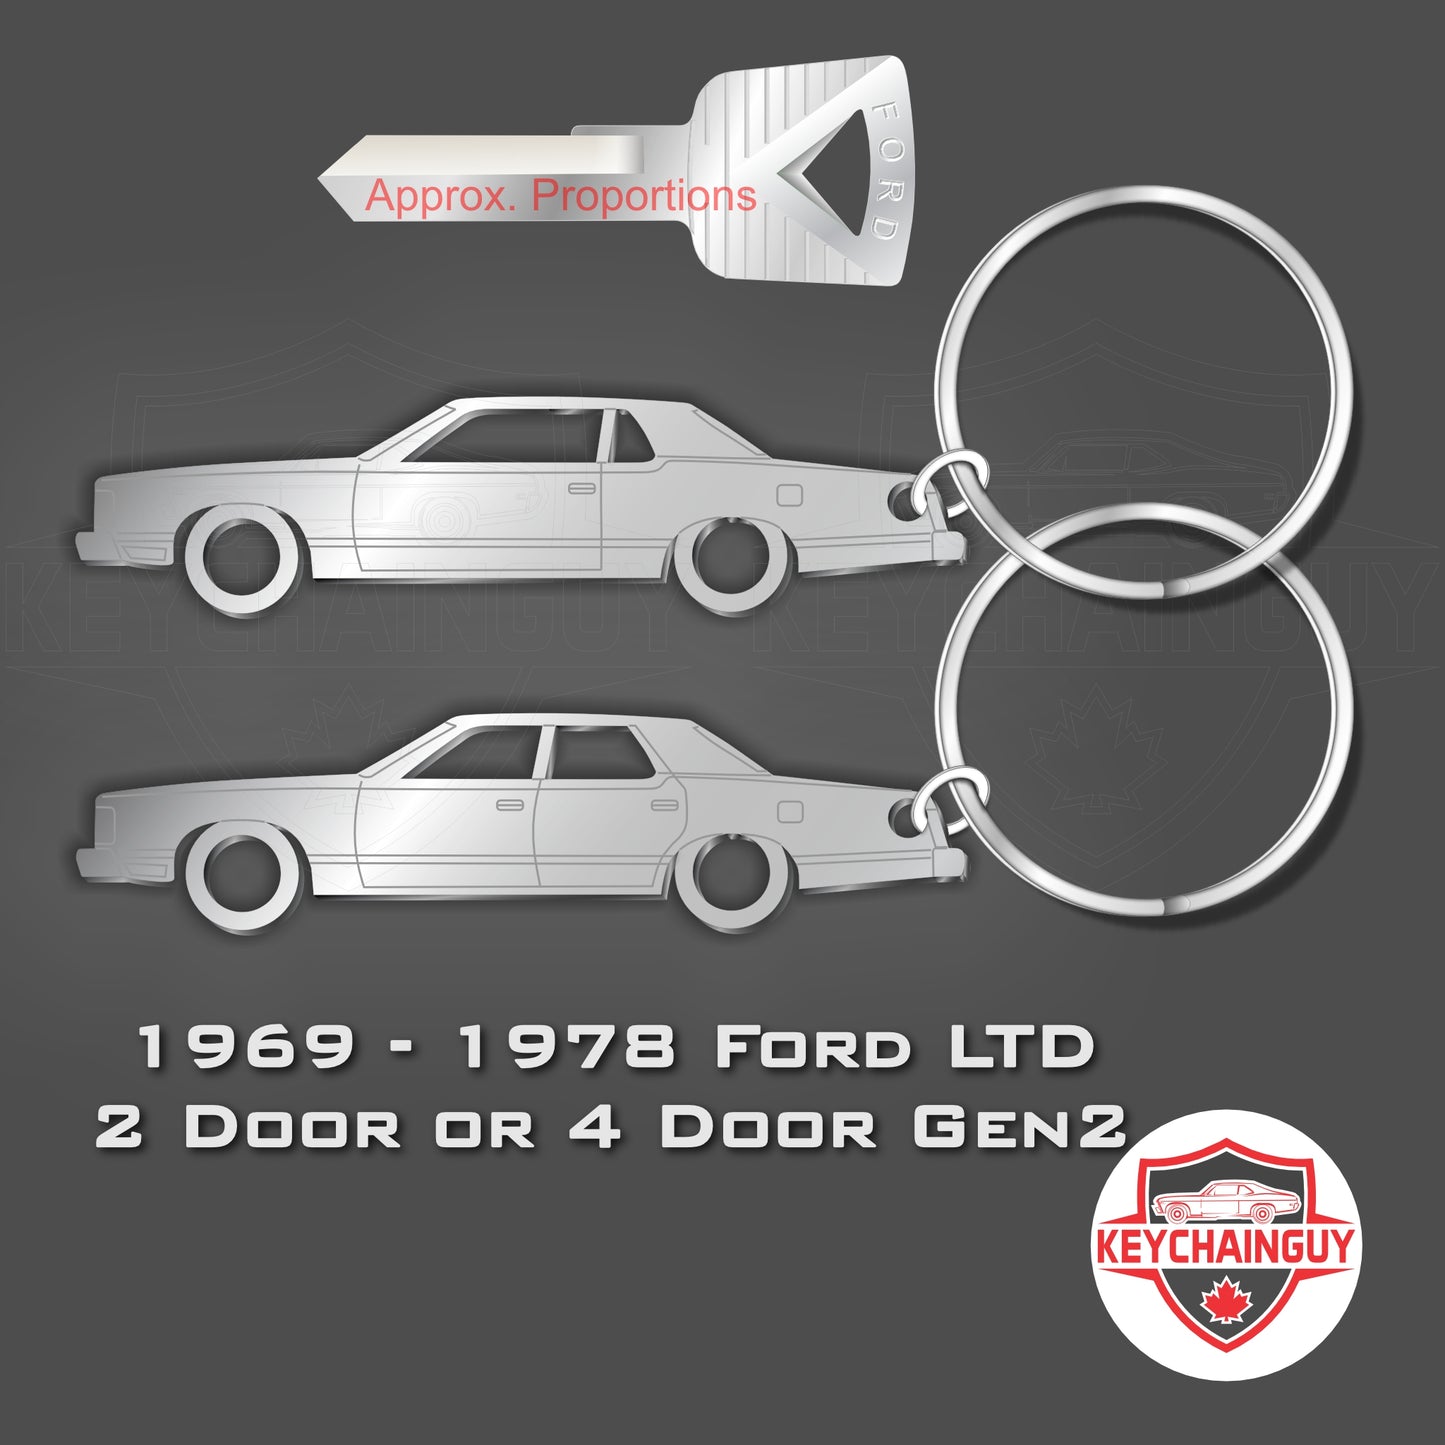 1969 - 1978 Ford LTD 2 Gen, 2 Door or 4 Door